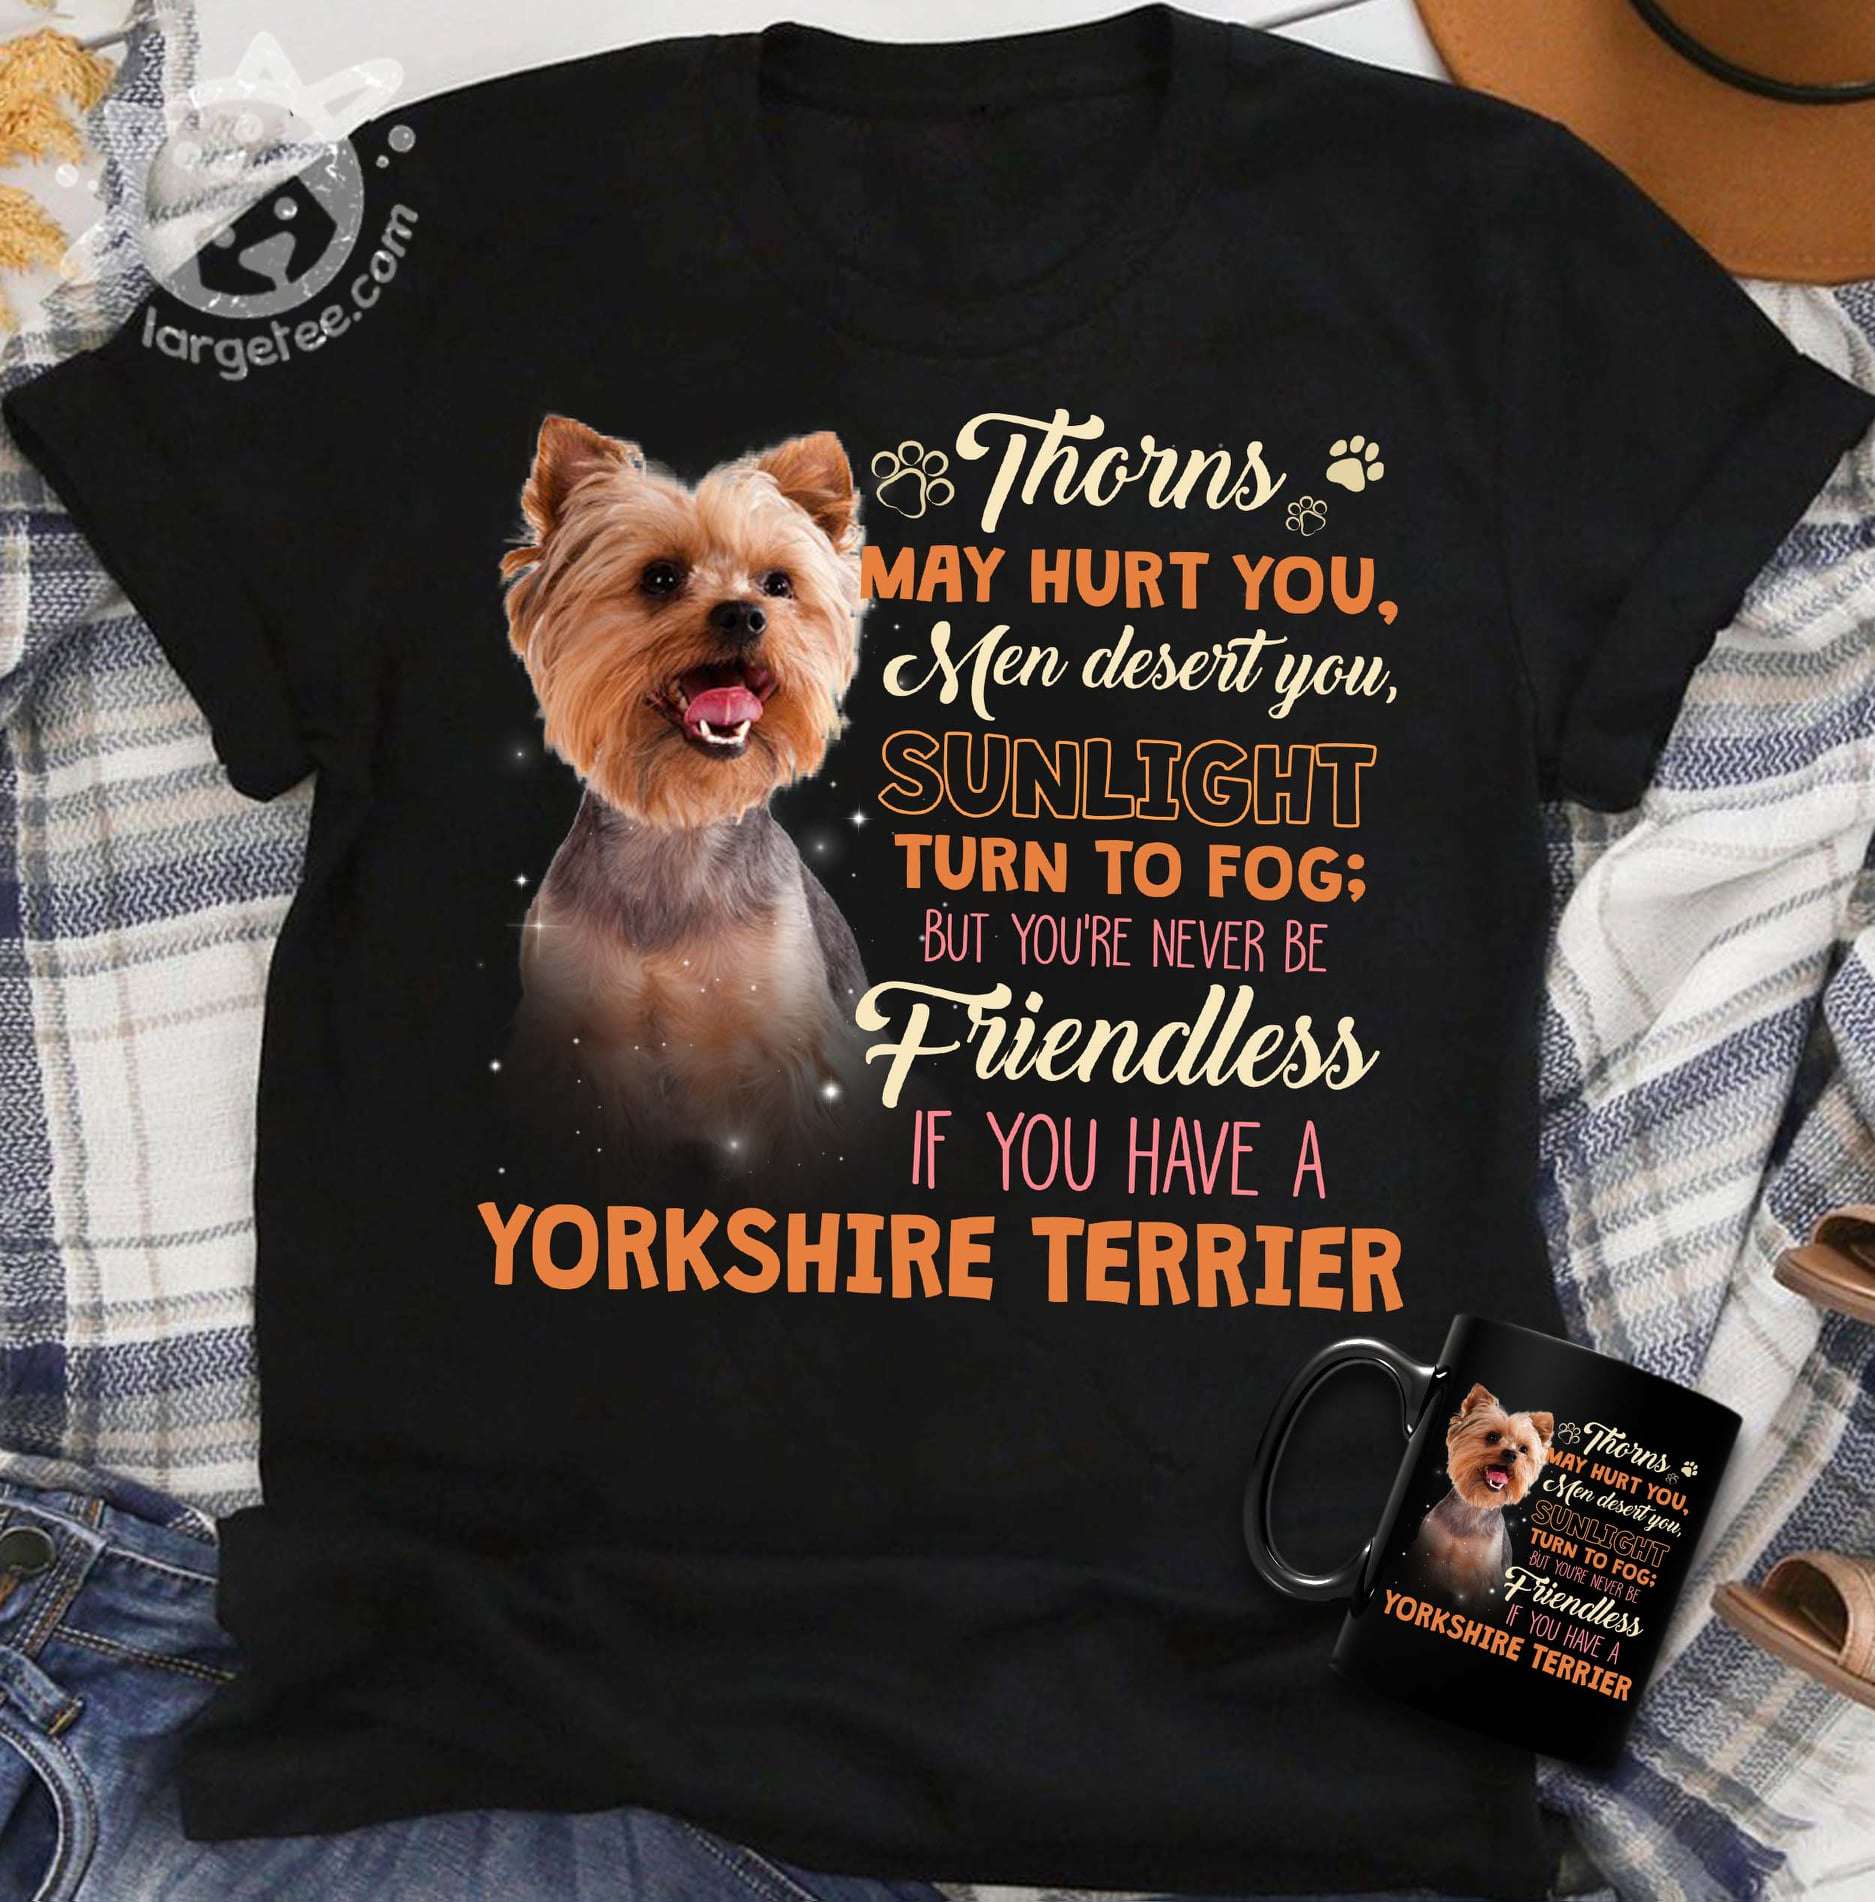 Thorns may hurt you, men desert you, sunlight turn to fog - Yorkshire Terrier